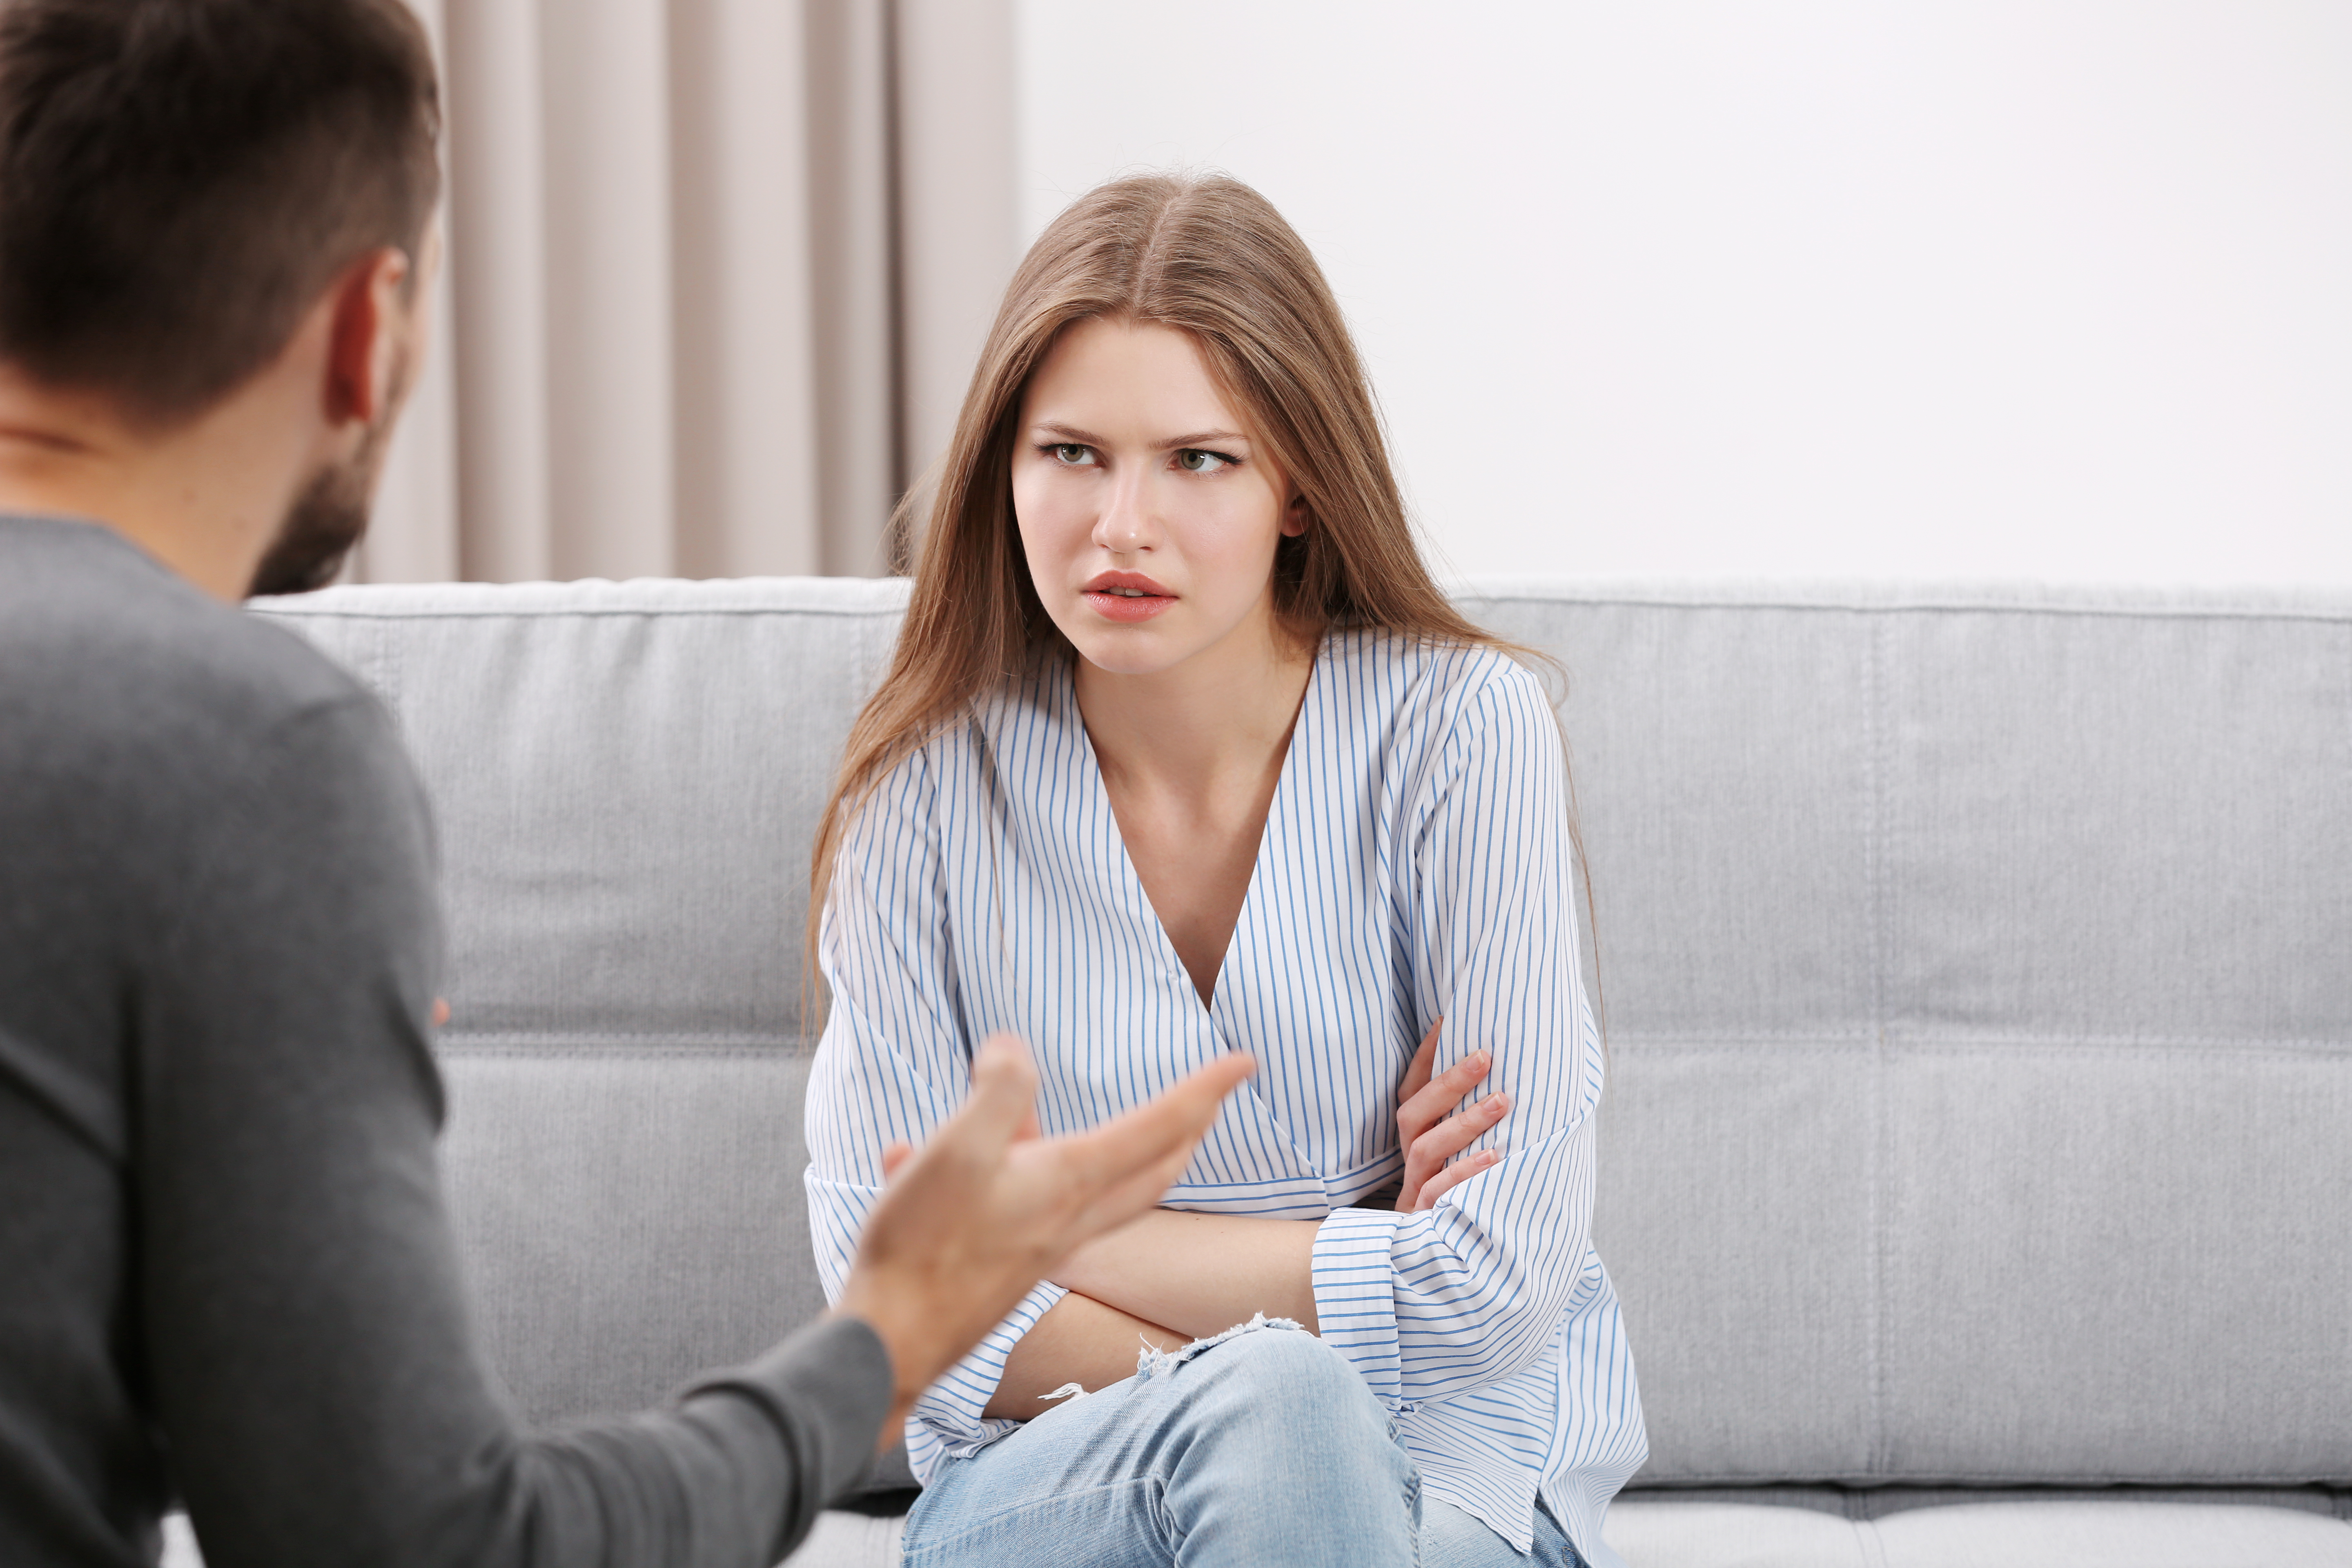 Un homme est photographié en train de parler à sa petite amie à la maison | Source : Shutterstock